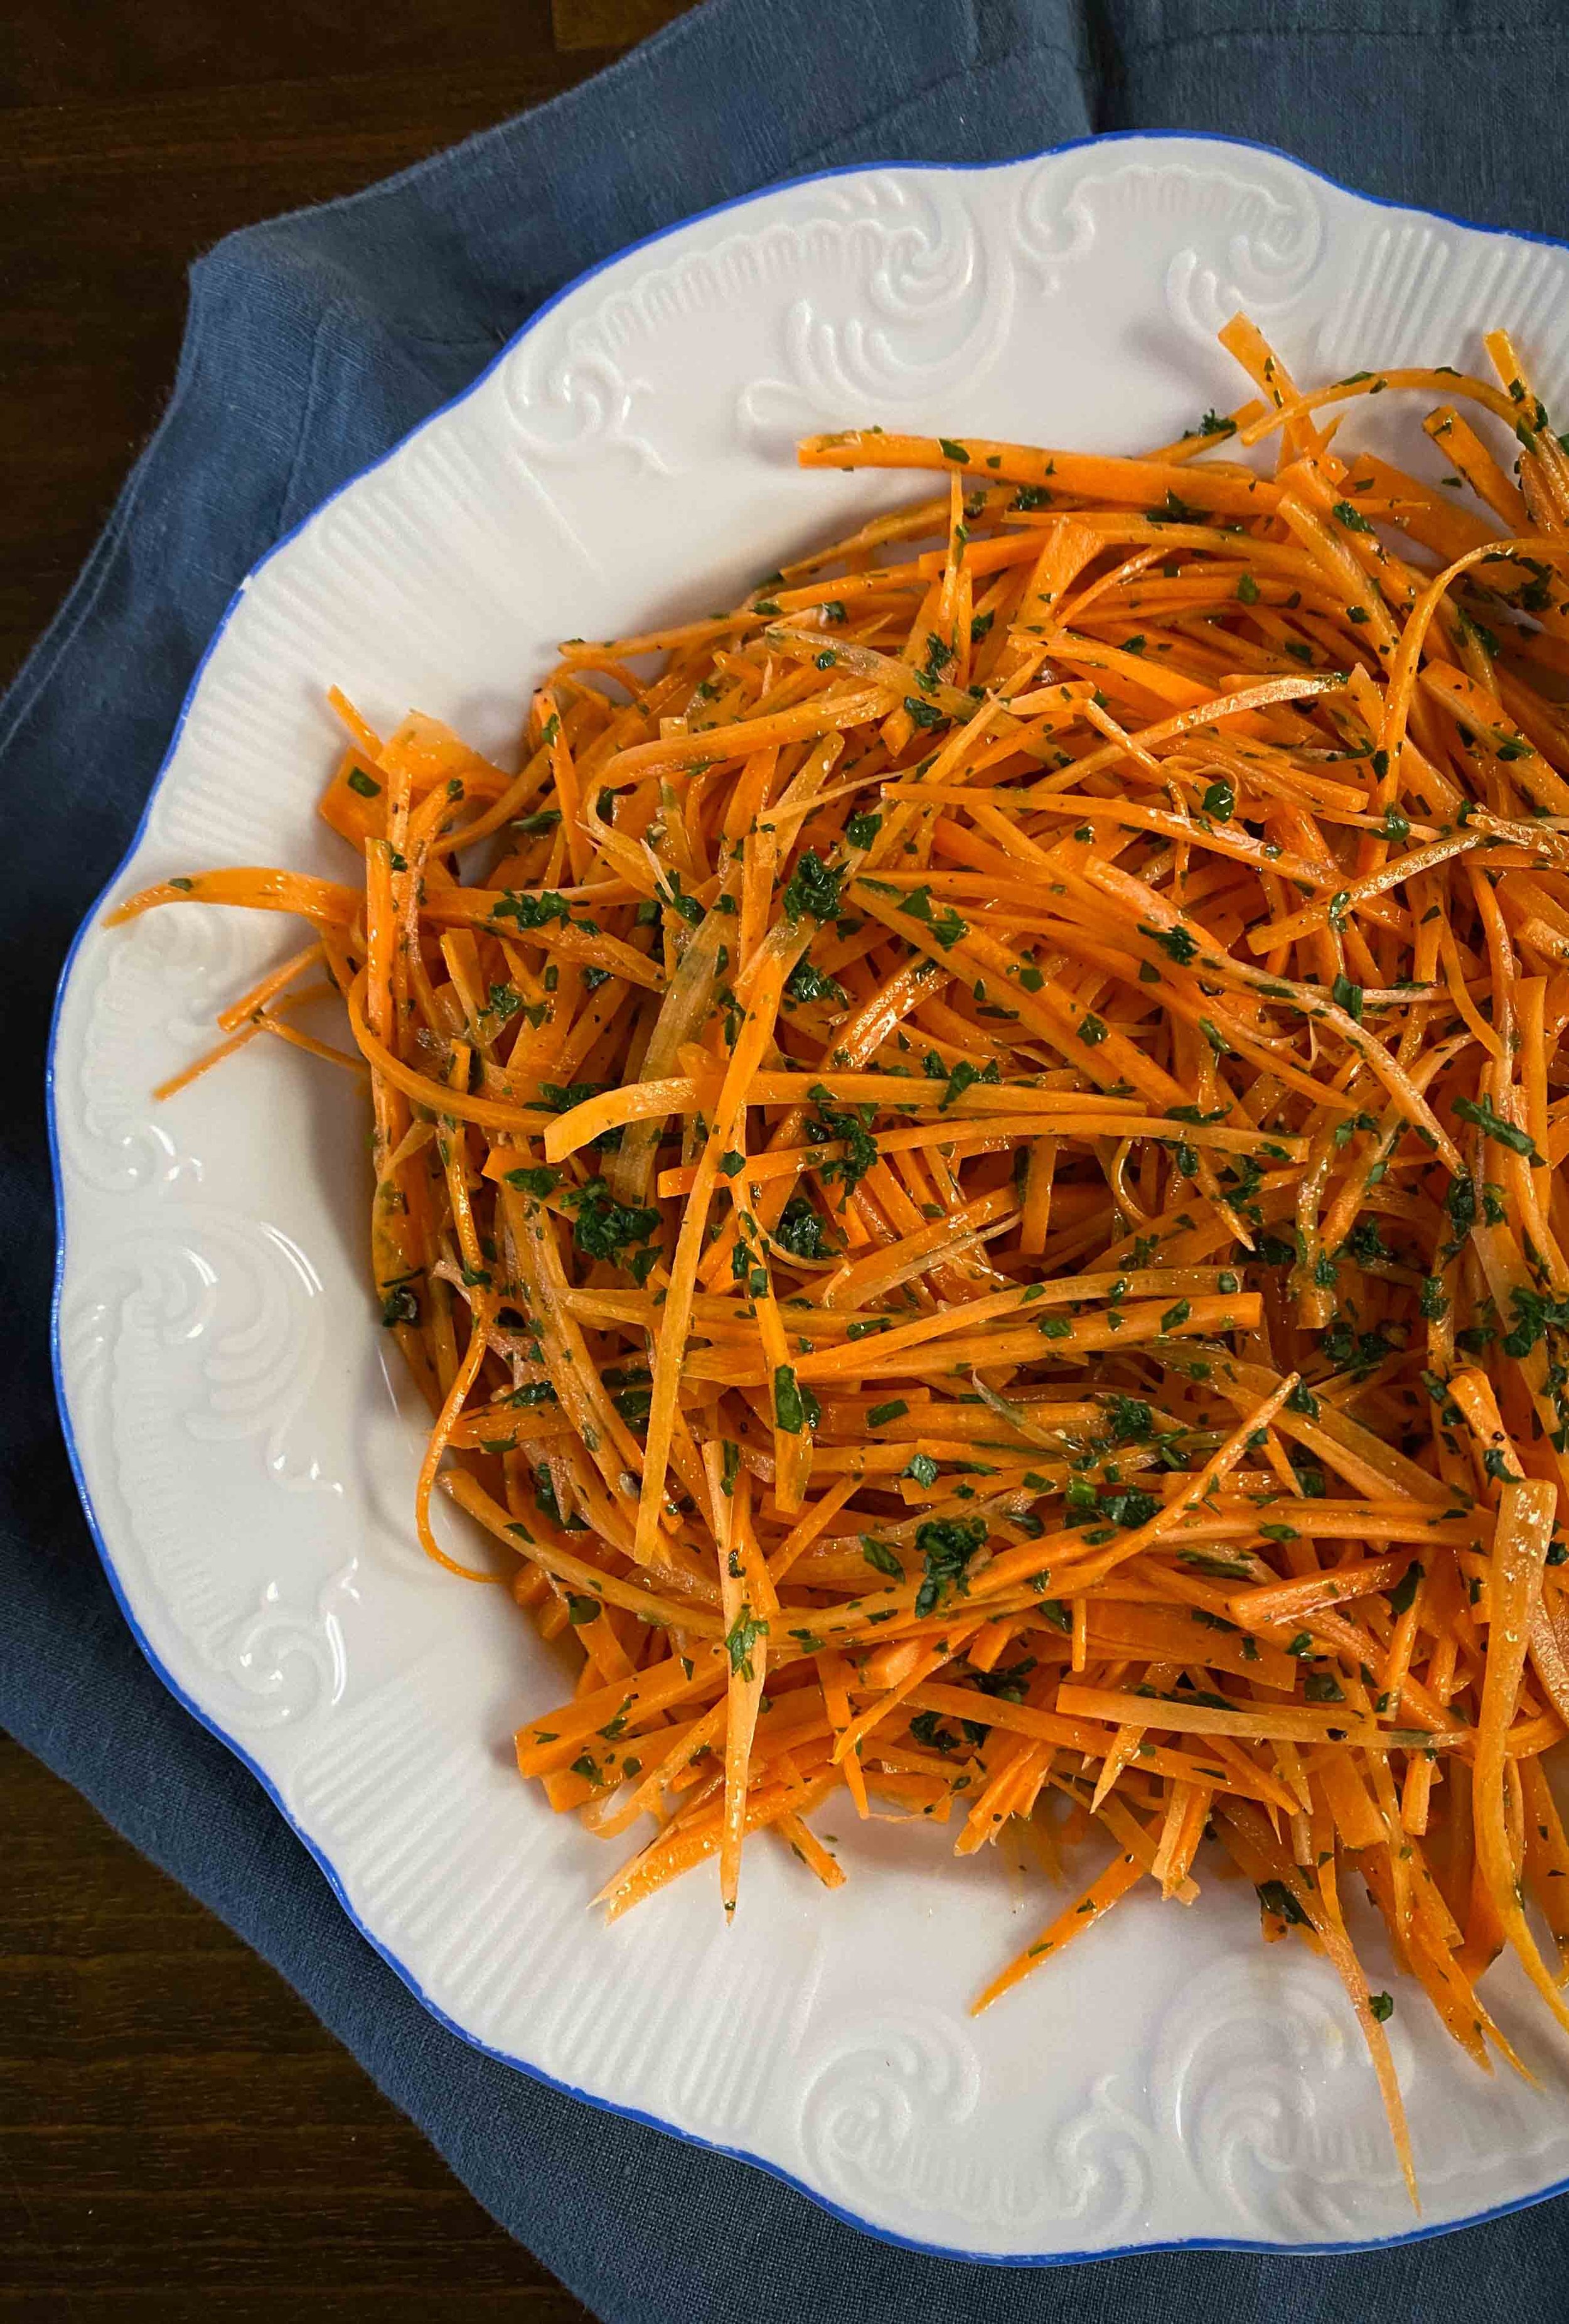 Râpe fine pour carottes